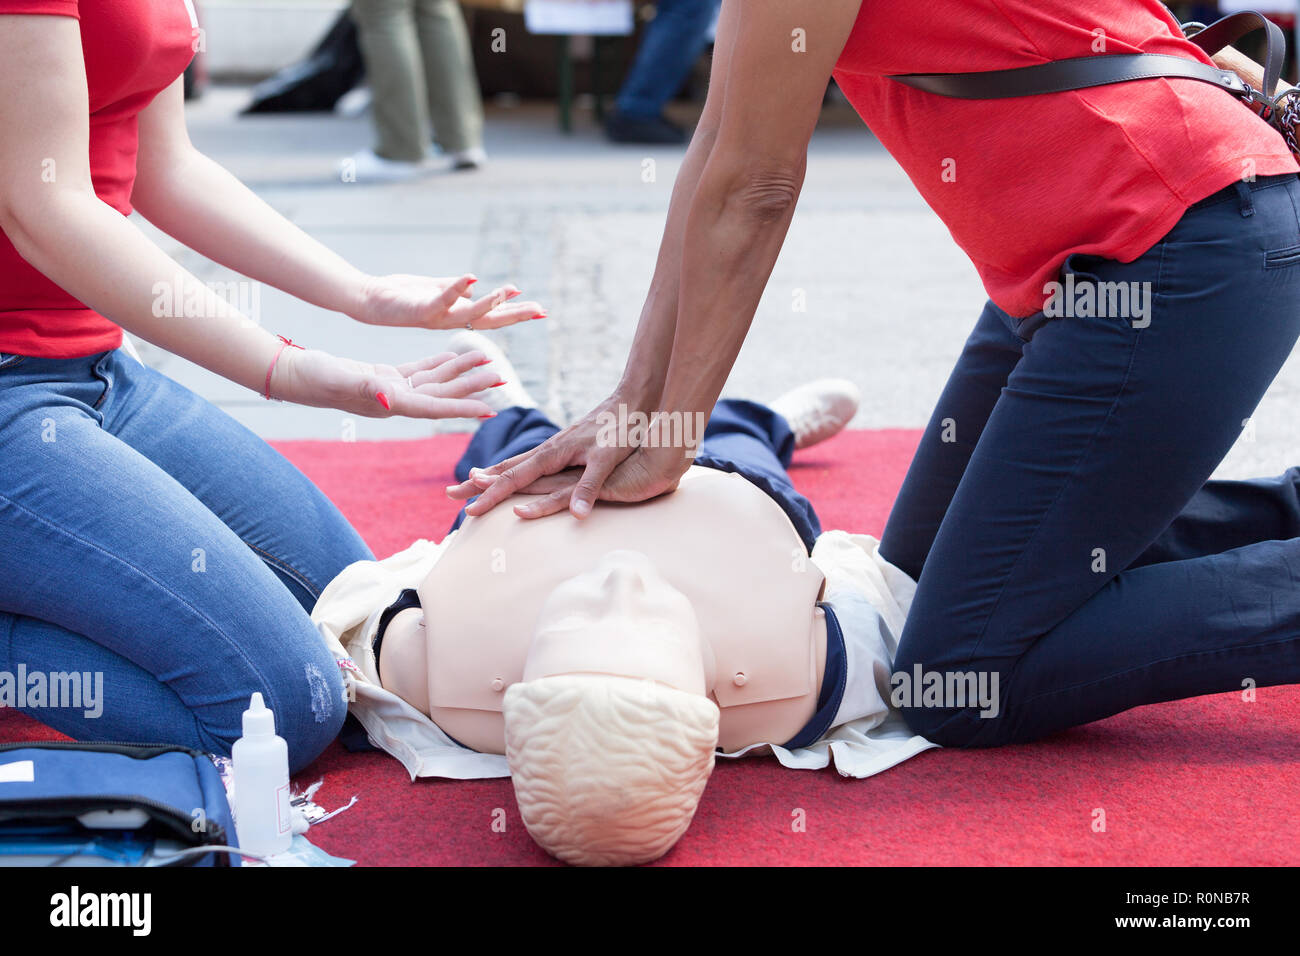 Una formazione di primo soccorso dettaglio - I paramedici aiutare i cittadini a praticare la rianimazione cardiopolmonare (RCP) Foto Stock